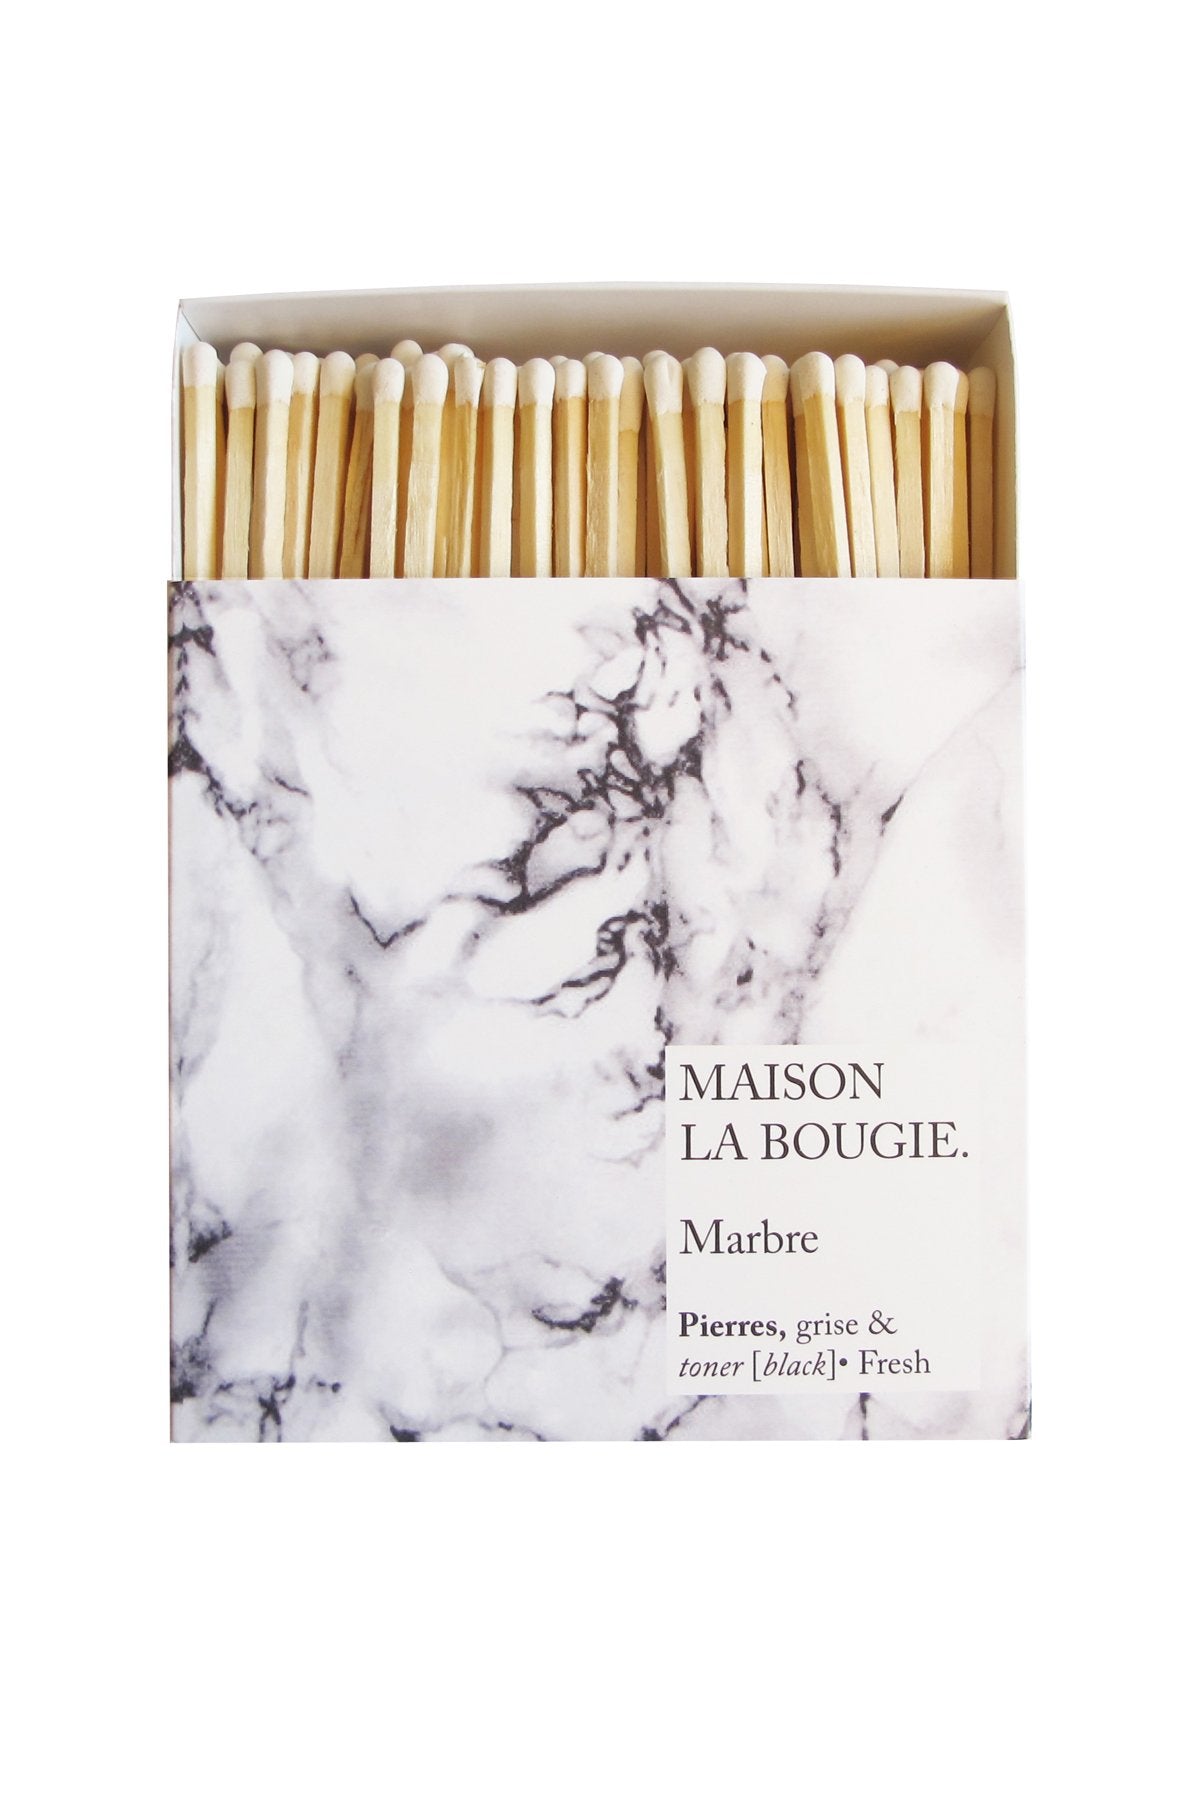 MARBRE matches | Maison La Bougie